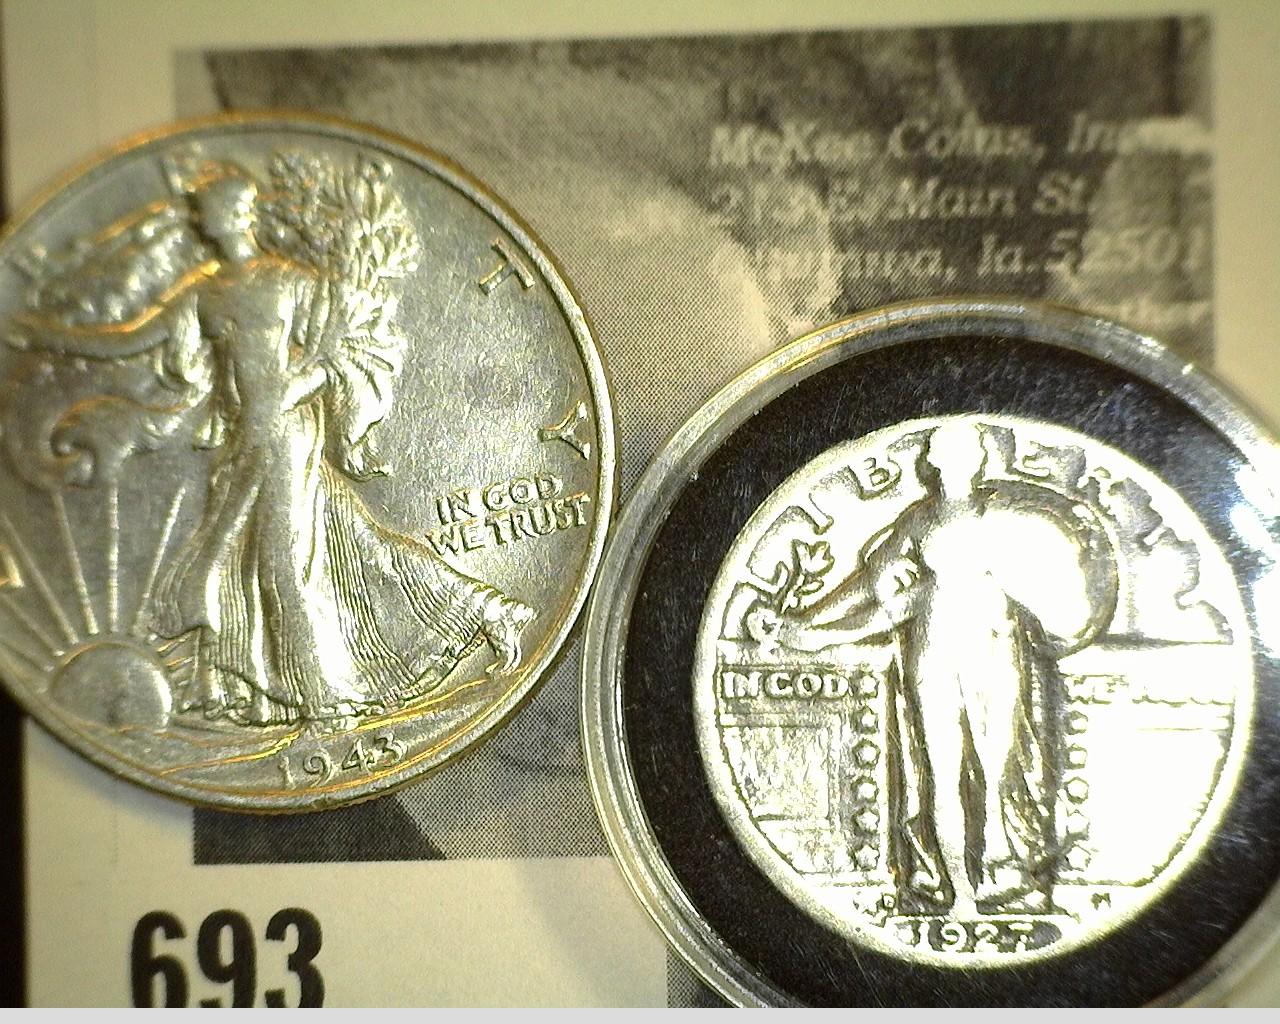 1927 D Standing Liberty Quarter & 1943 P attractive grade Walking Liberty Half Dollar.